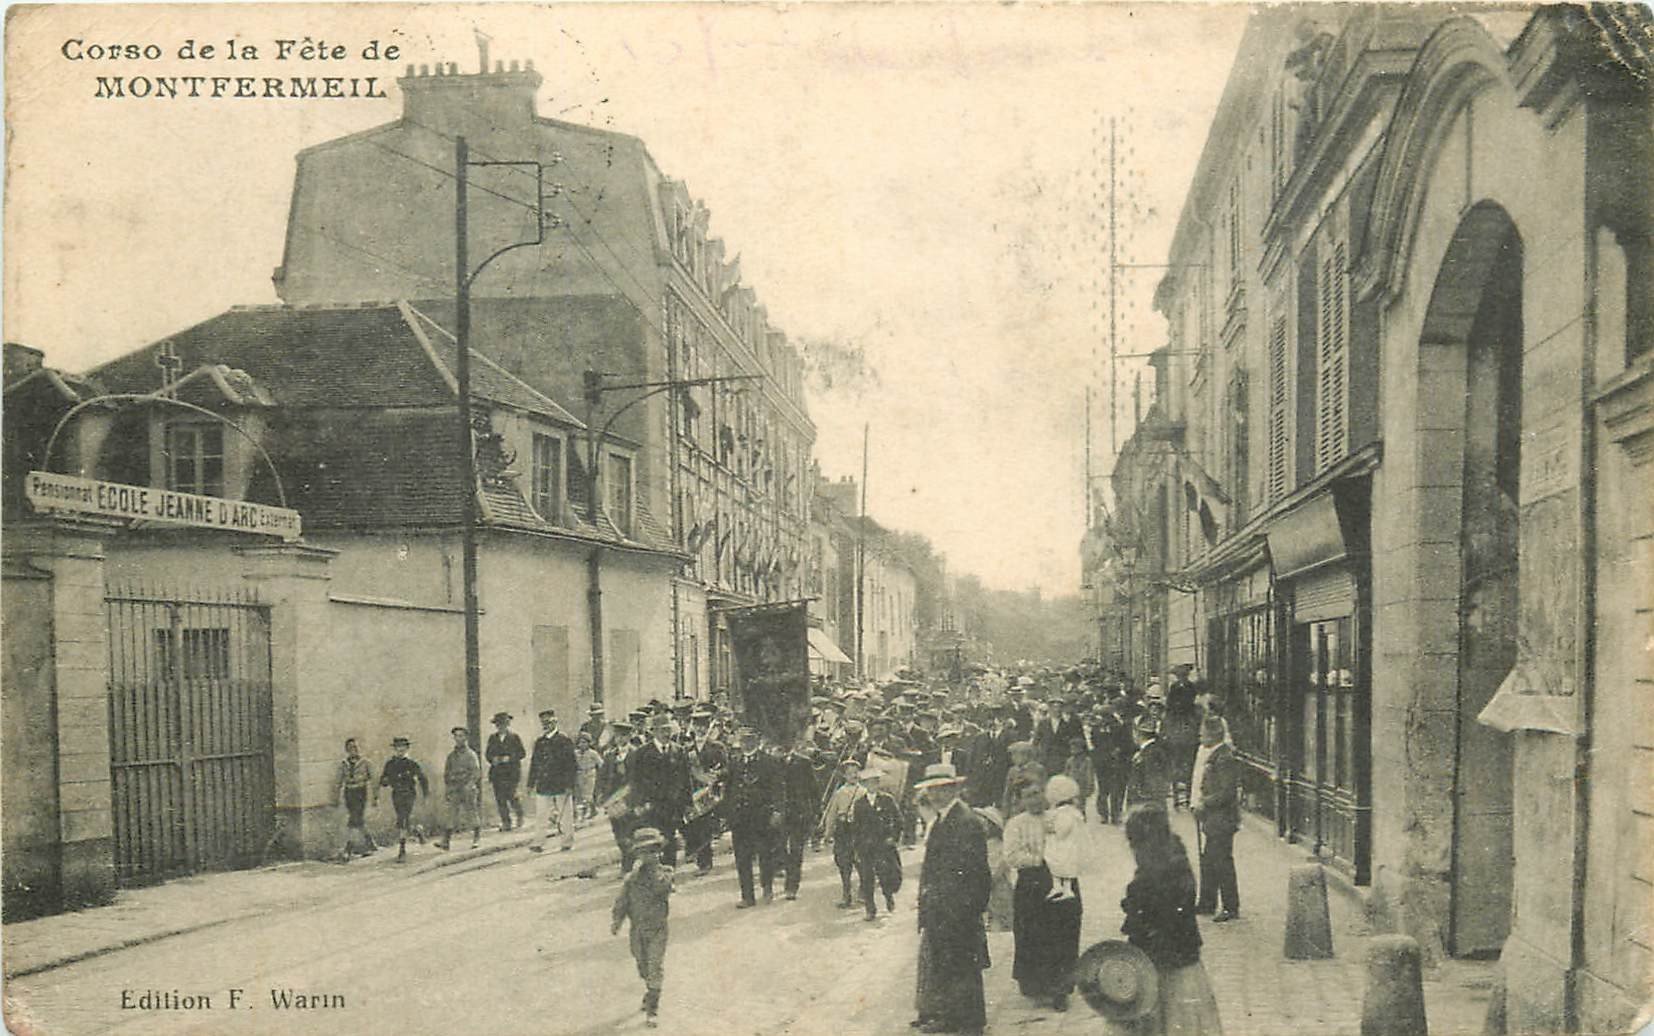 93 MONTFERMEIL. Ecole Jeanne d'Arc Corso de la Fête avec Fanfare et Procession 1917